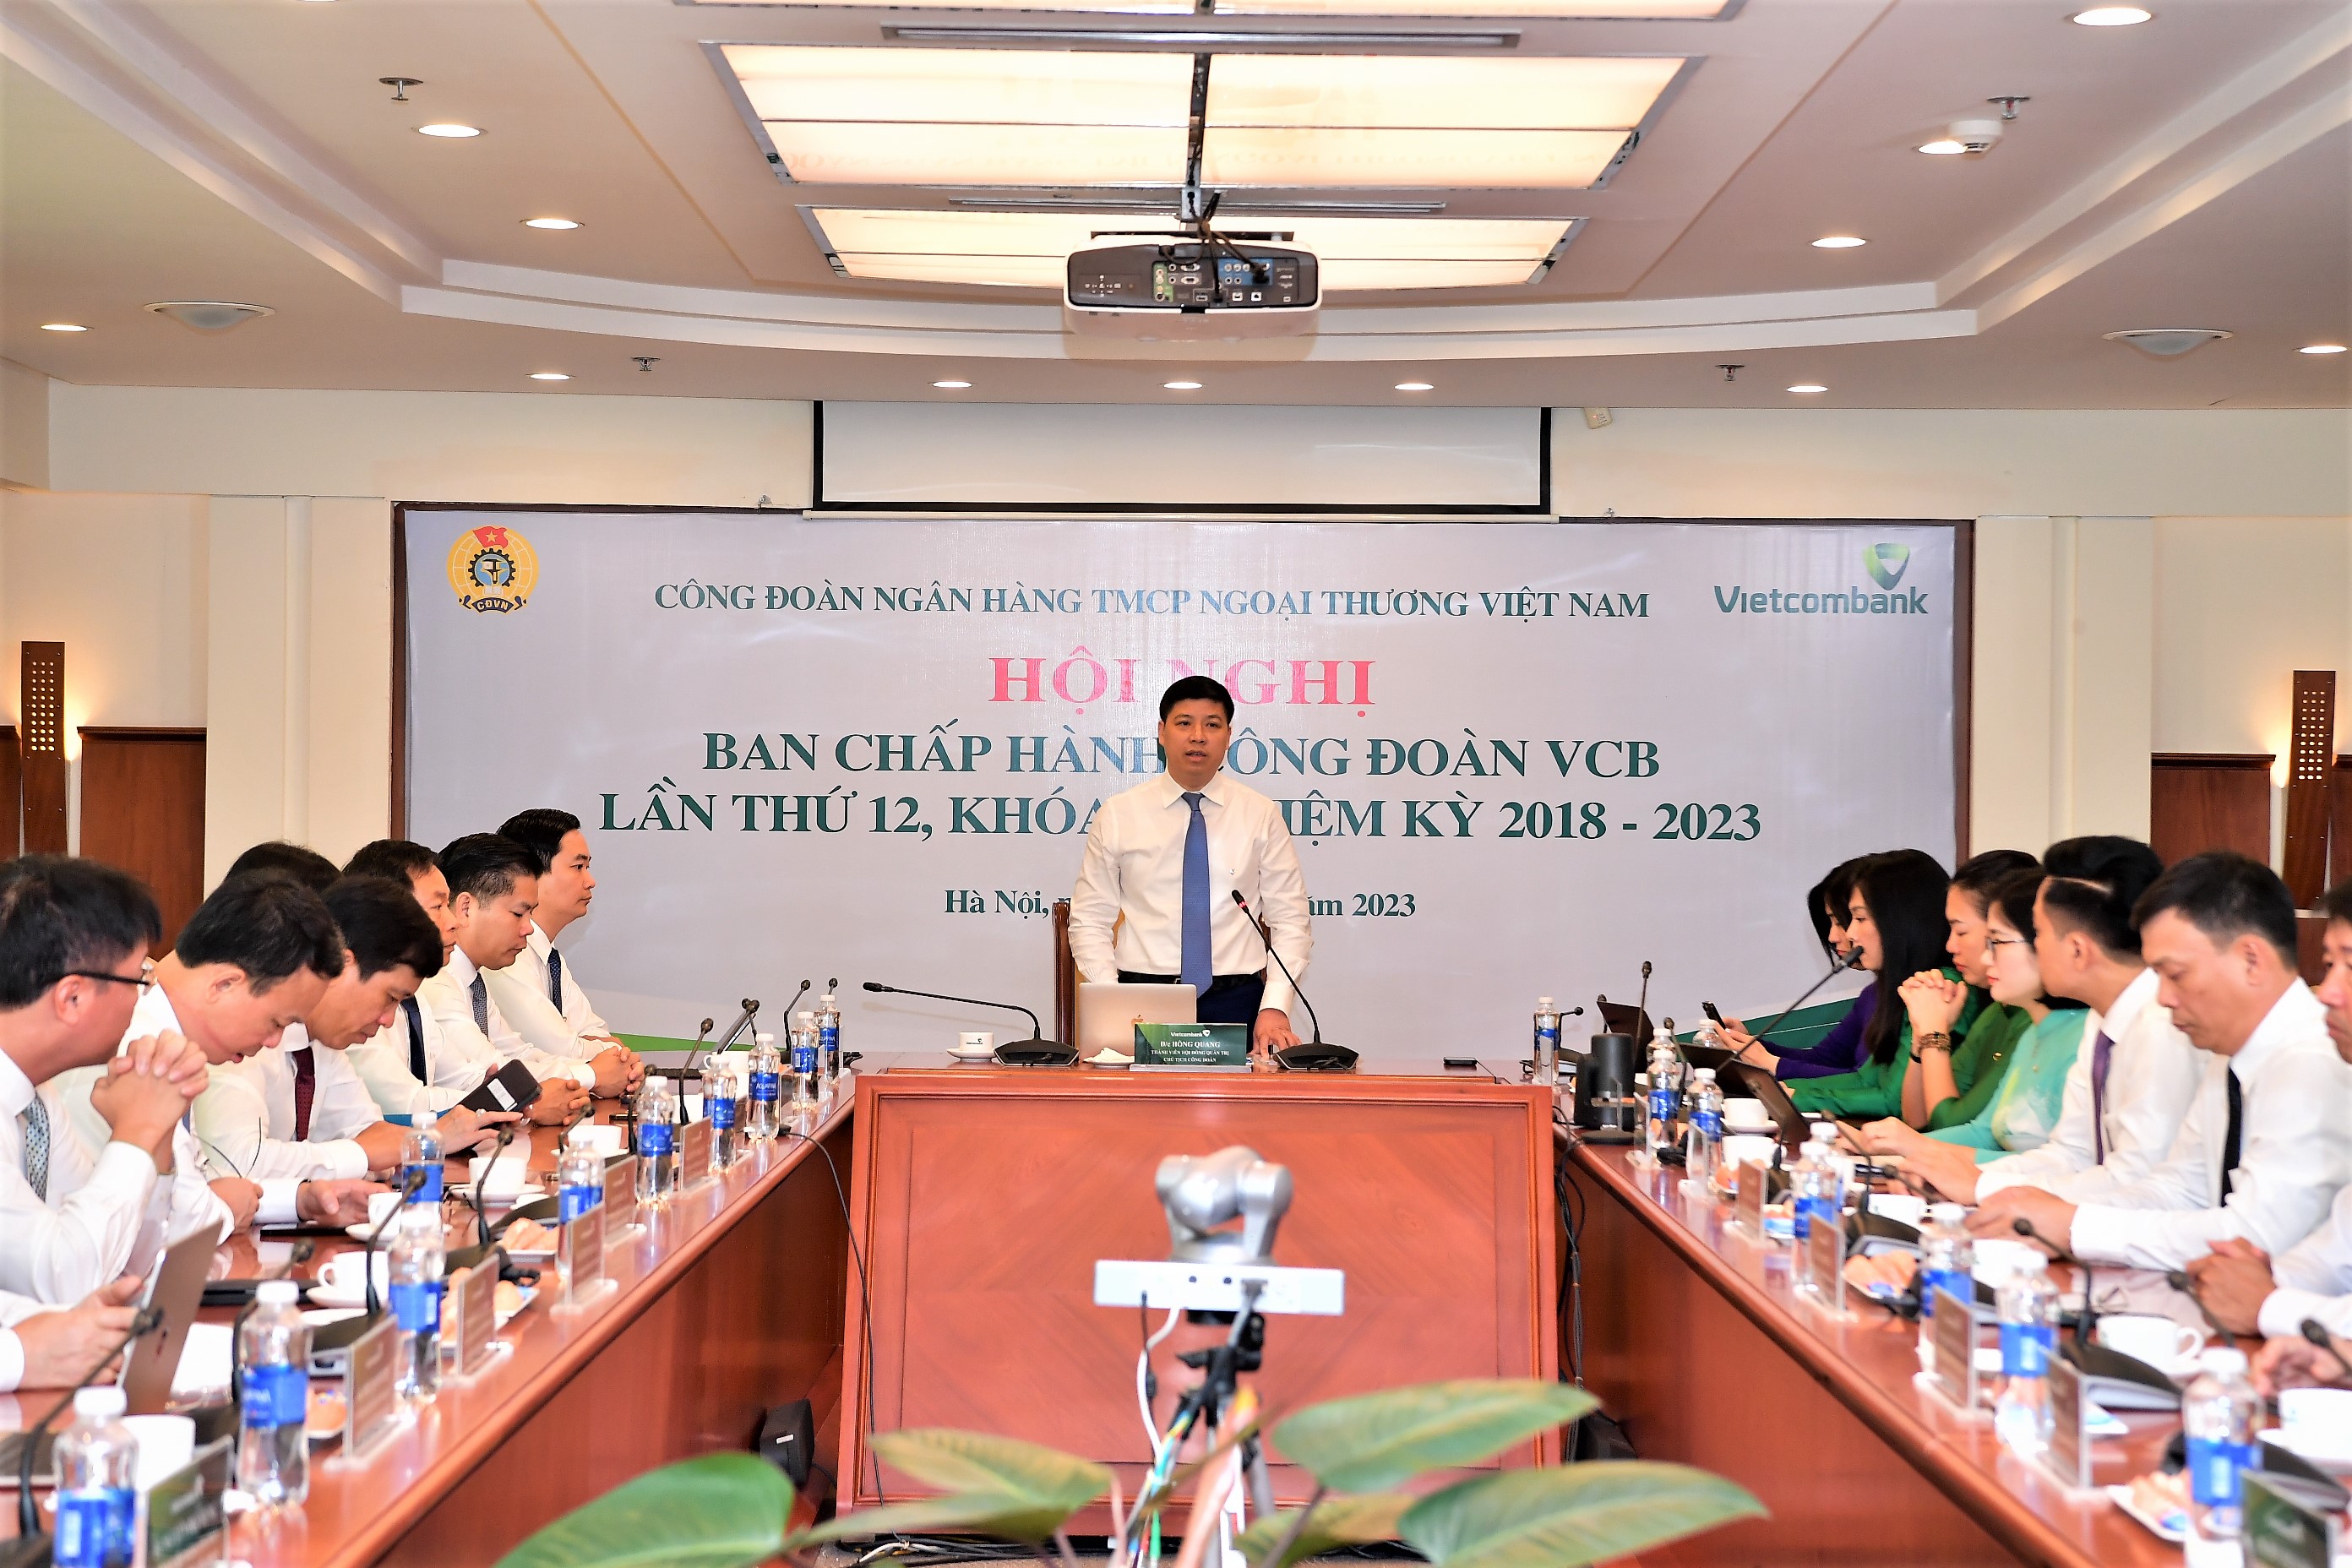 Vietcombank tổ chức thành công Hội nghị Ban Thường vụ và Hội nghị Ban Chấp hành Công đoàn lần thứ 12, khóa V, nhiệm kỳ 2018 - 2023